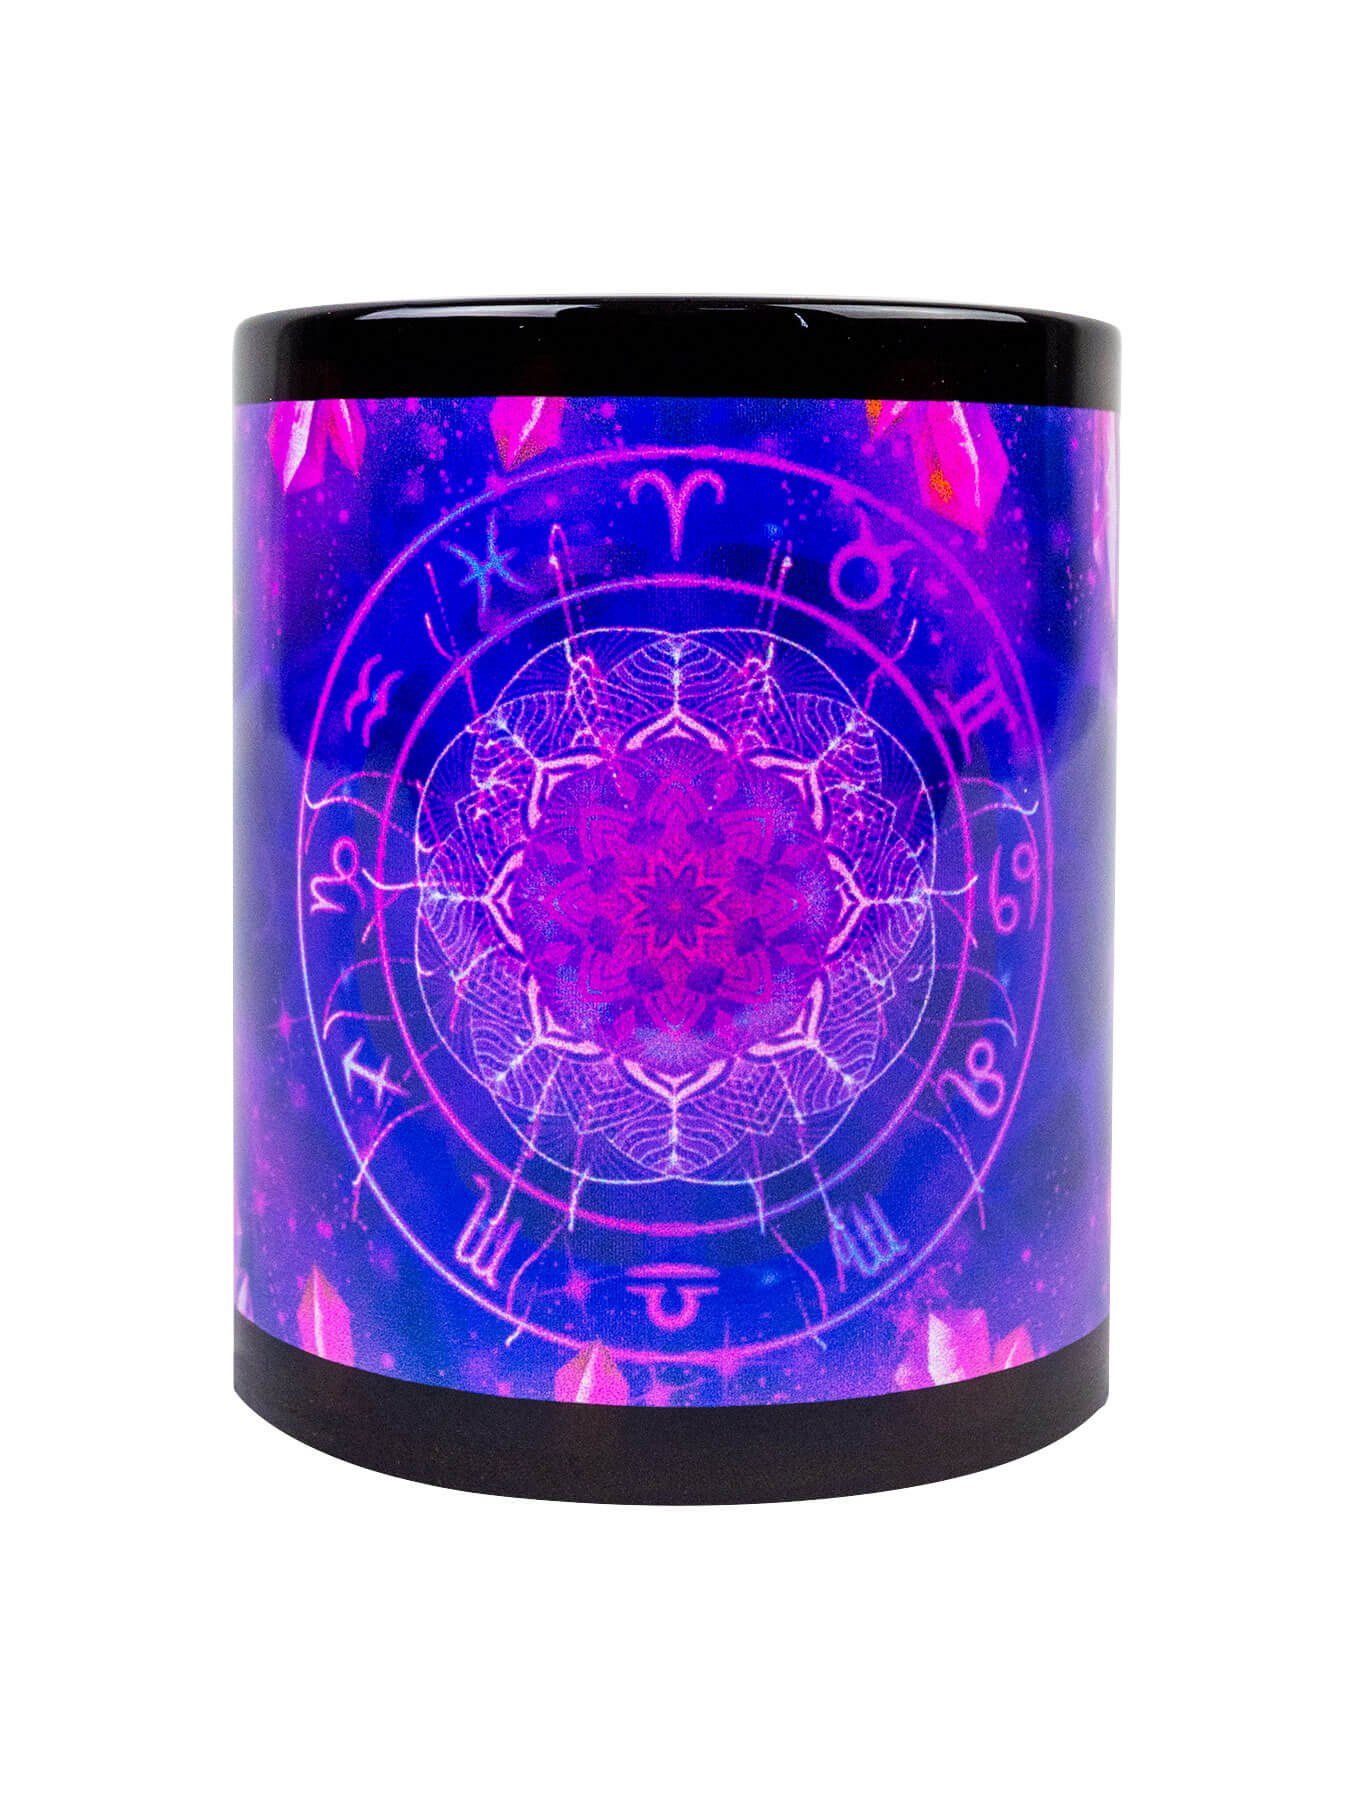 "Zodiac unter PSYWORK Neon Tasse Fluo leuchtet UV-aktiv, Motiv Cup Violet", Keramik, Schwarzlicht Signs Tasse